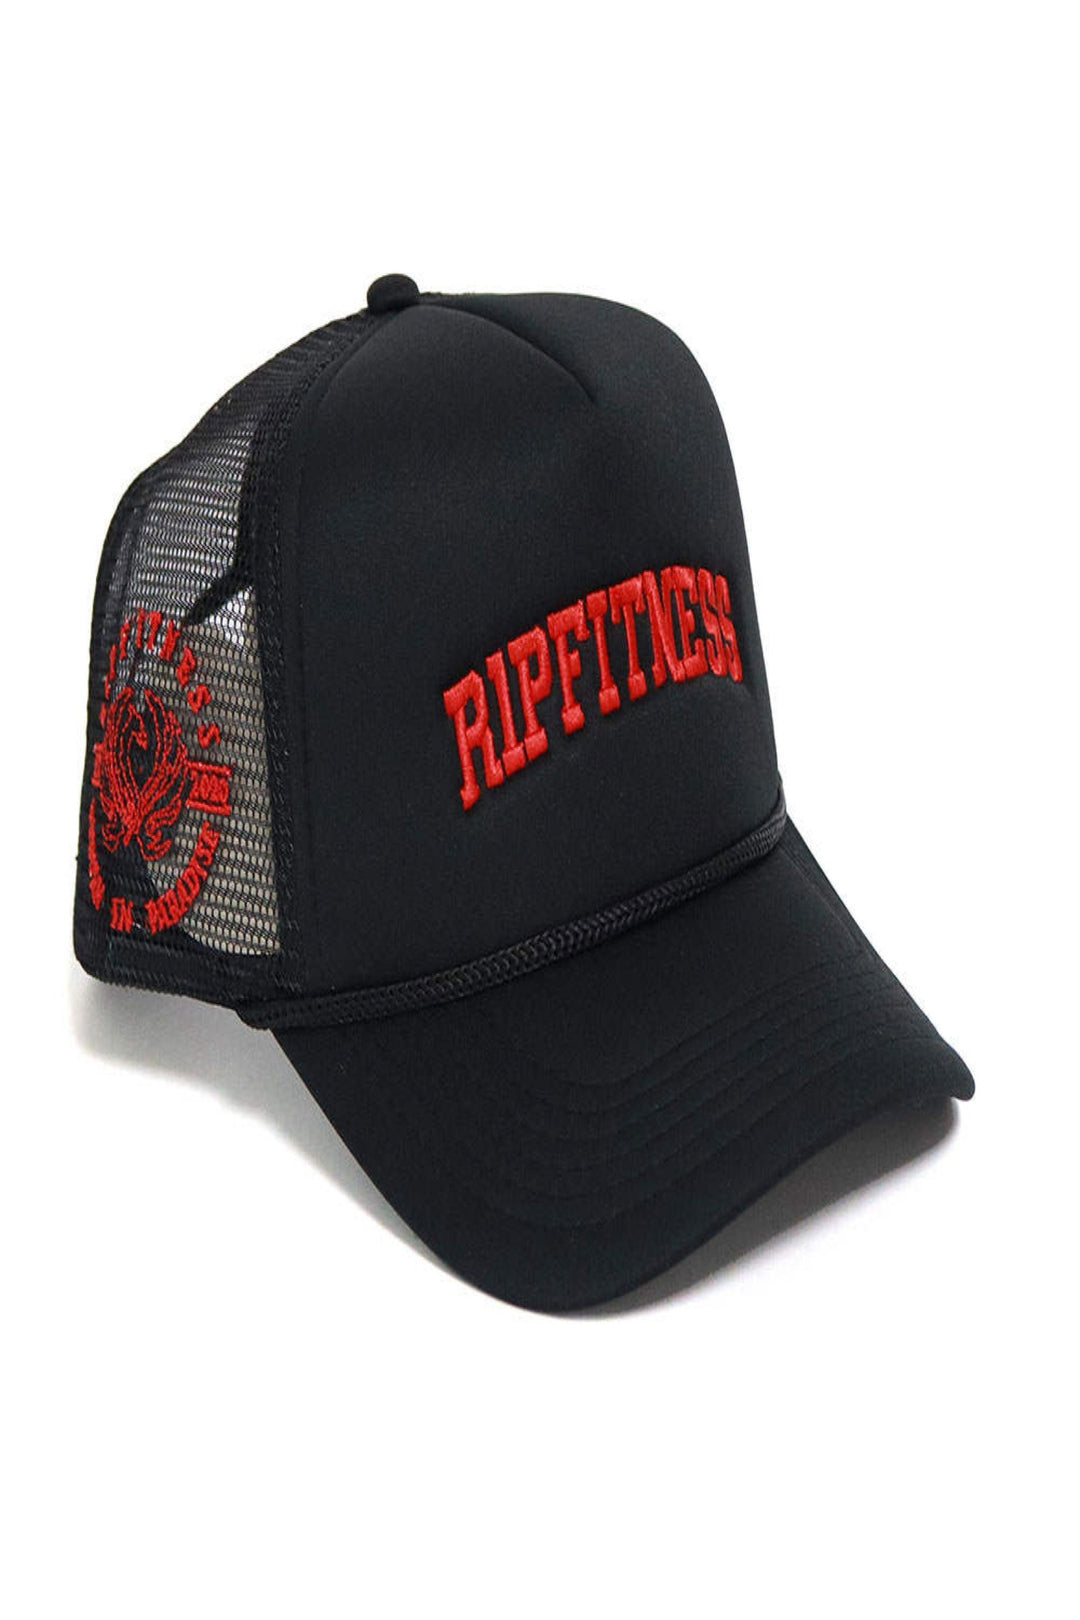 R1PFITNESS Trucker Hat